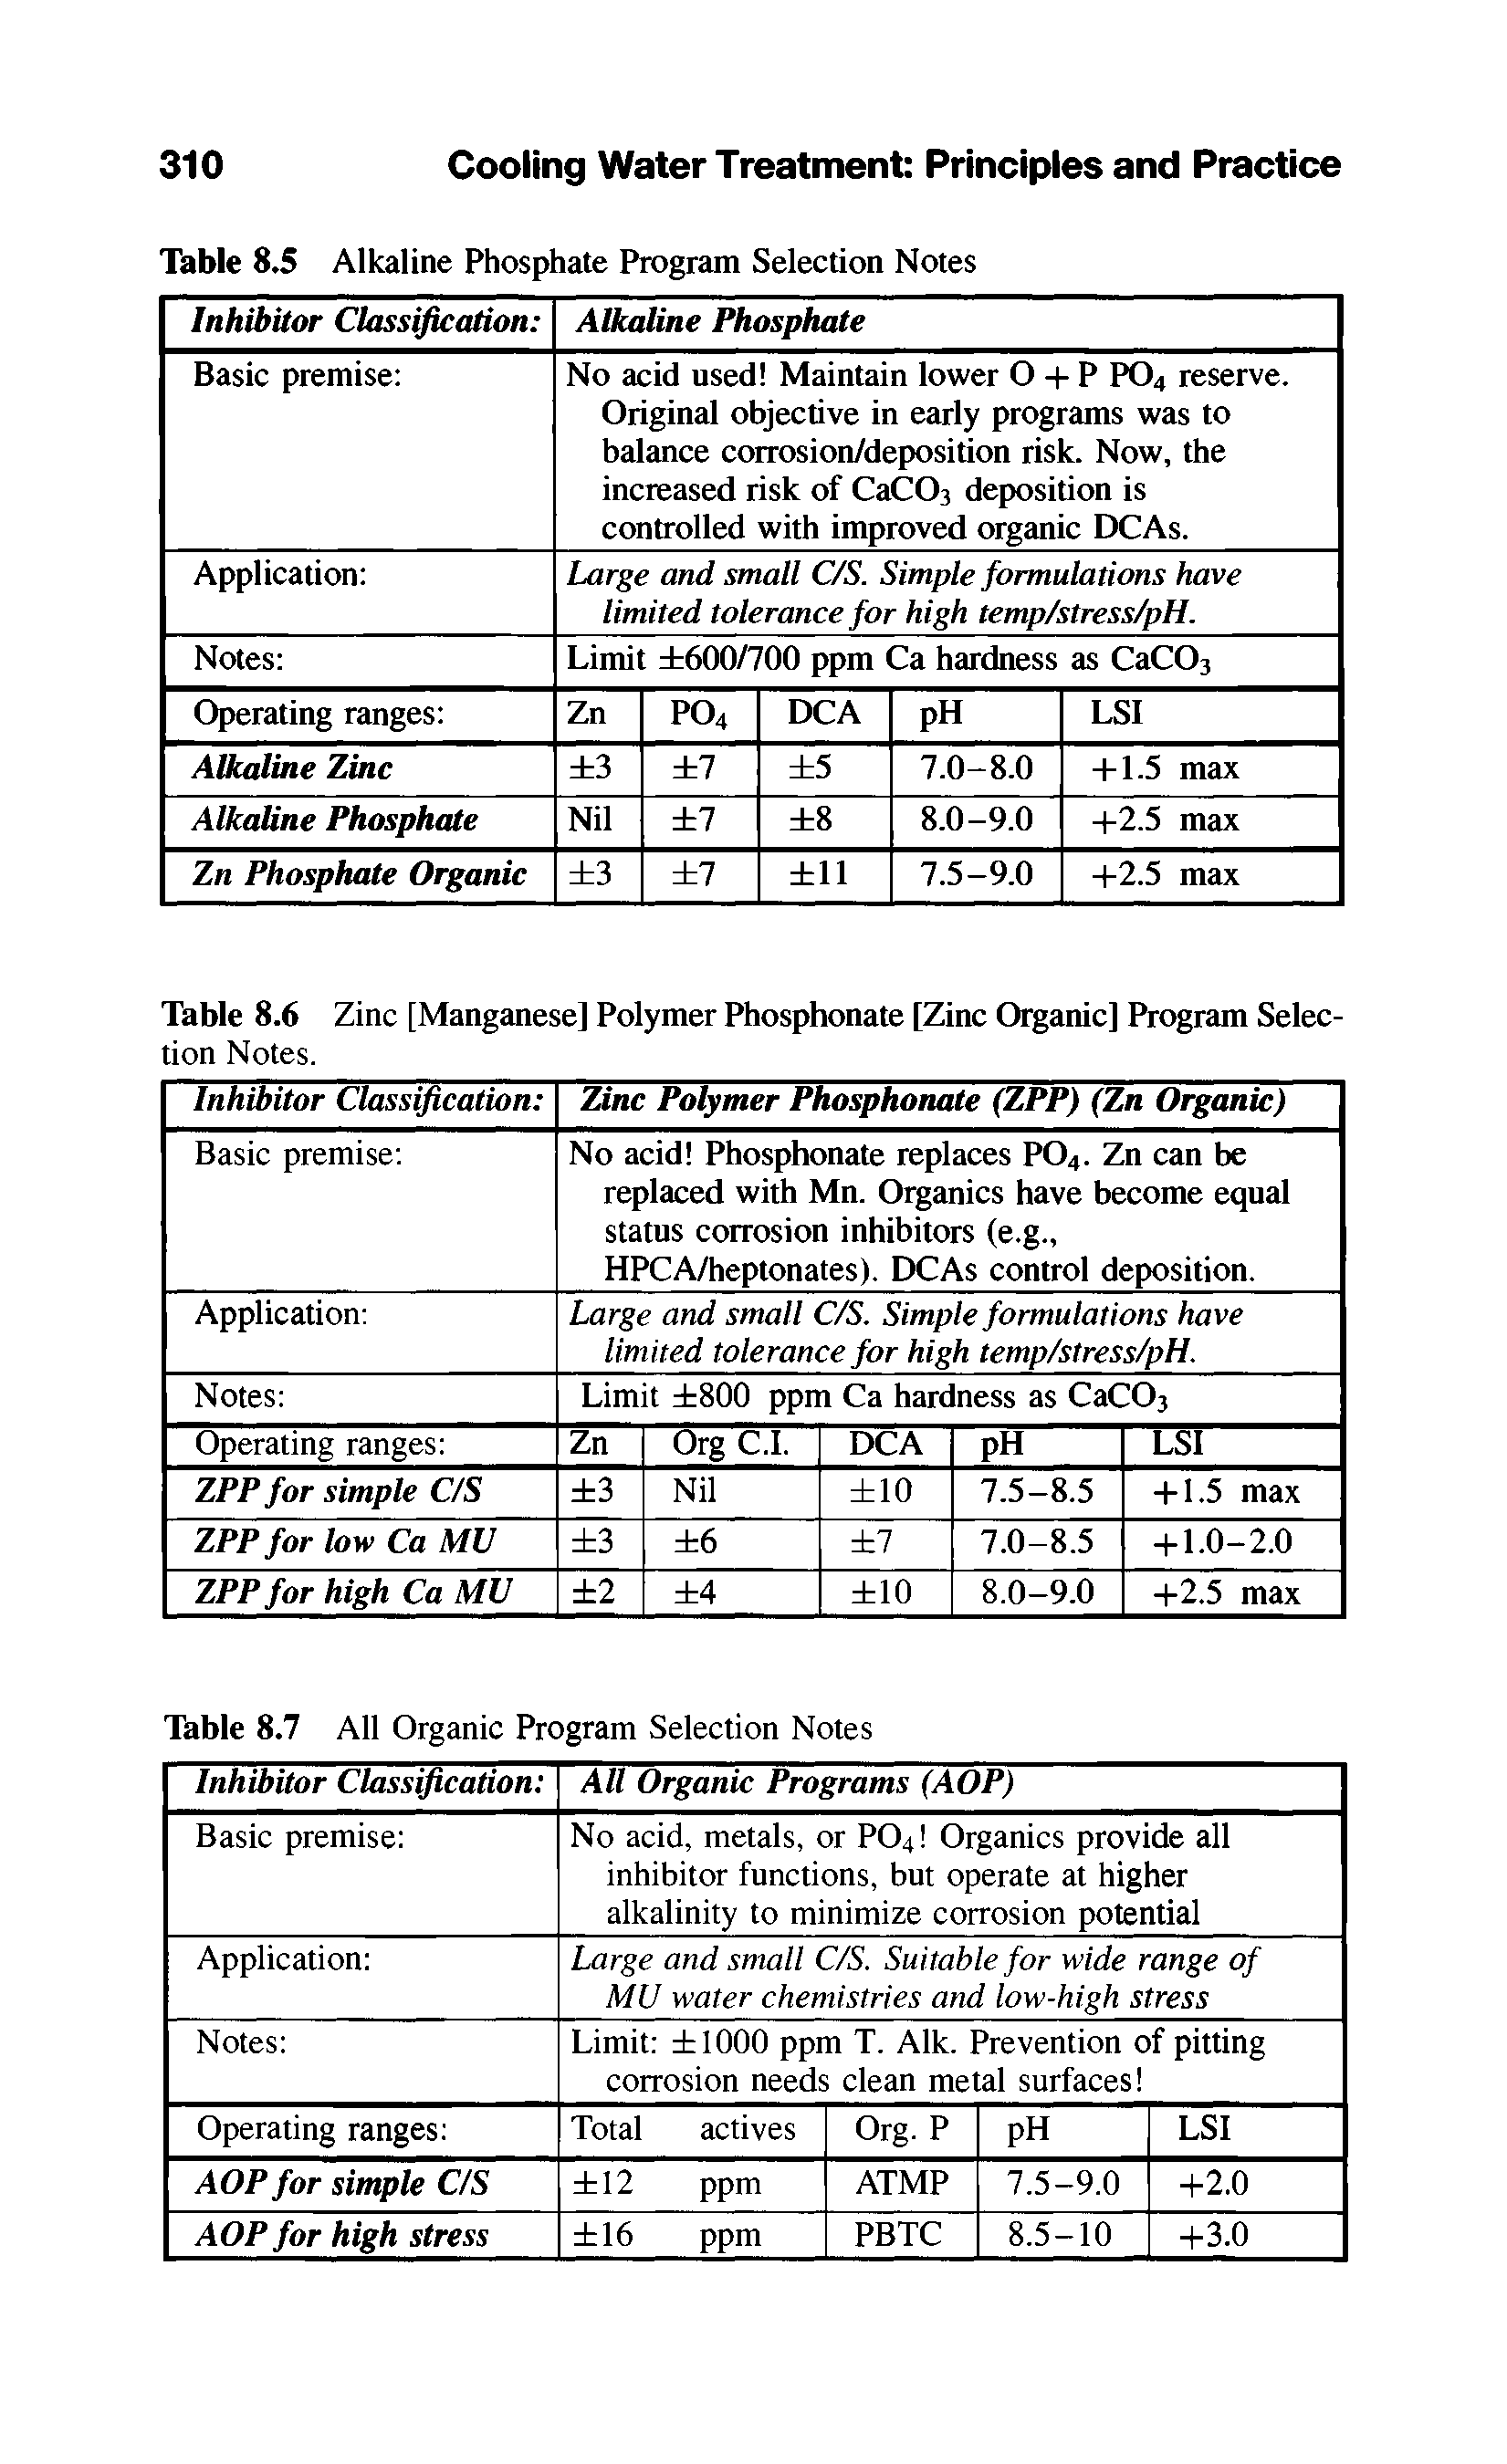 Table 8.6 Zinc [Manganese] Polymer Phosphonate [Zinc Organic] Program Selection Notes.